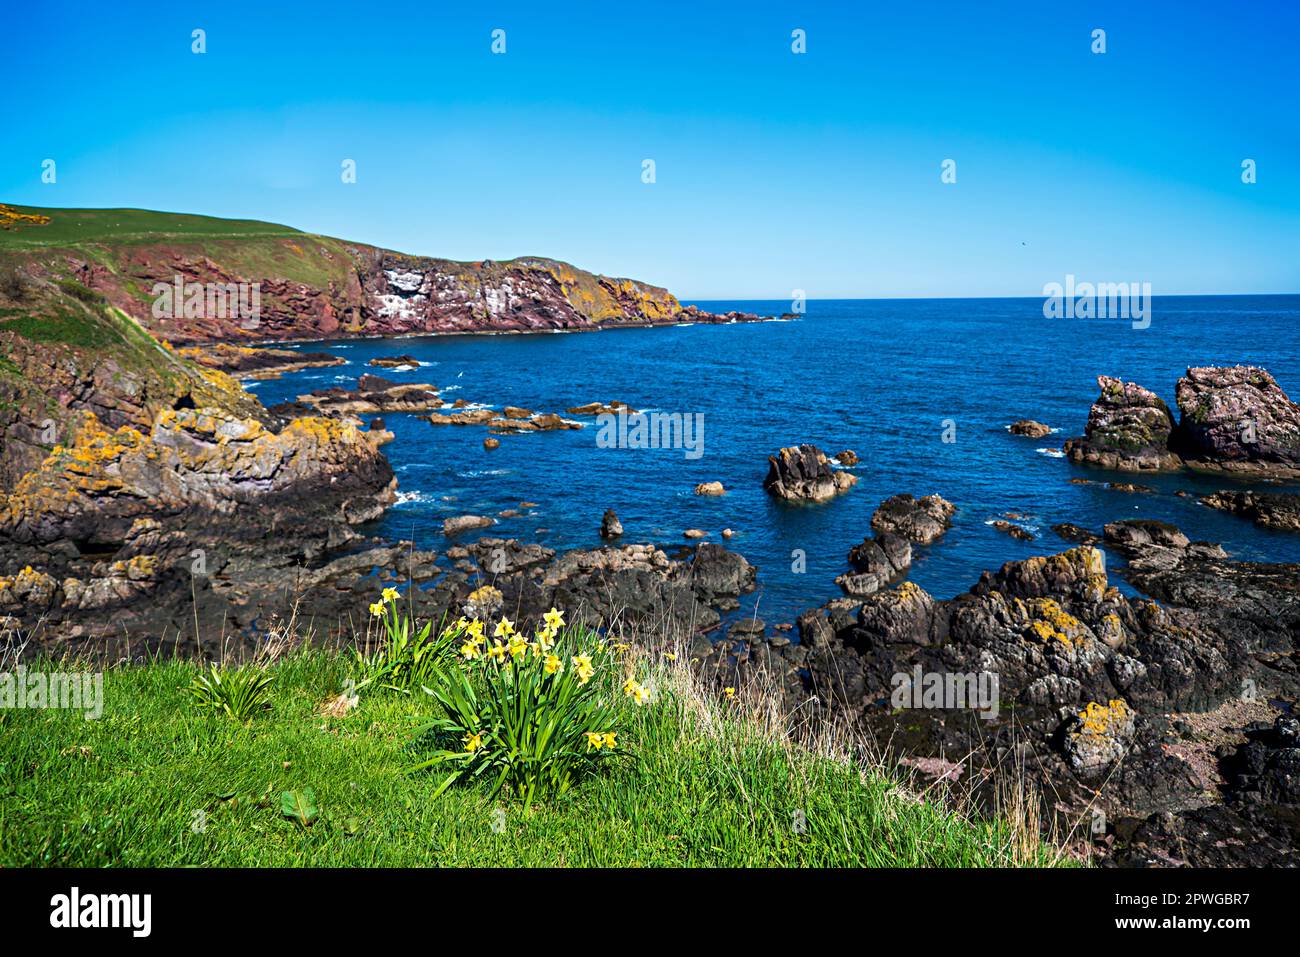 Fotografia di paesaggio della costa del Mare del Nord, serenità, paesaggi, panorama, roccia, pietra, rocciosa, narcisi Foto Stock